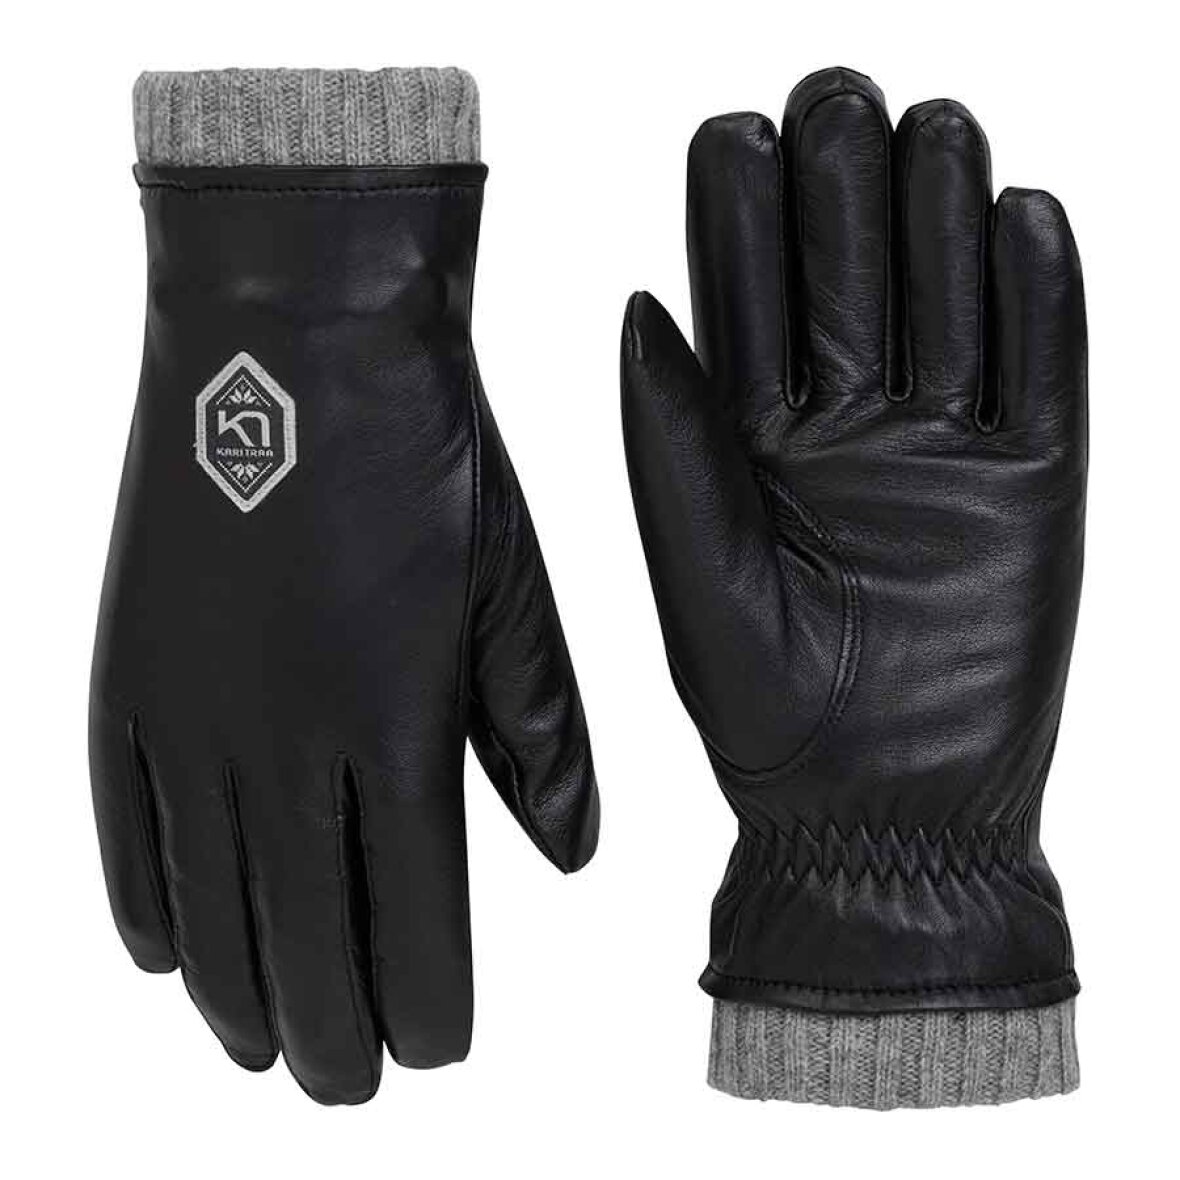 bagage Rejsebureau Edition Kari Traa HIMLE Glove Black - Smuk handske i 100% læder - Køb den her!